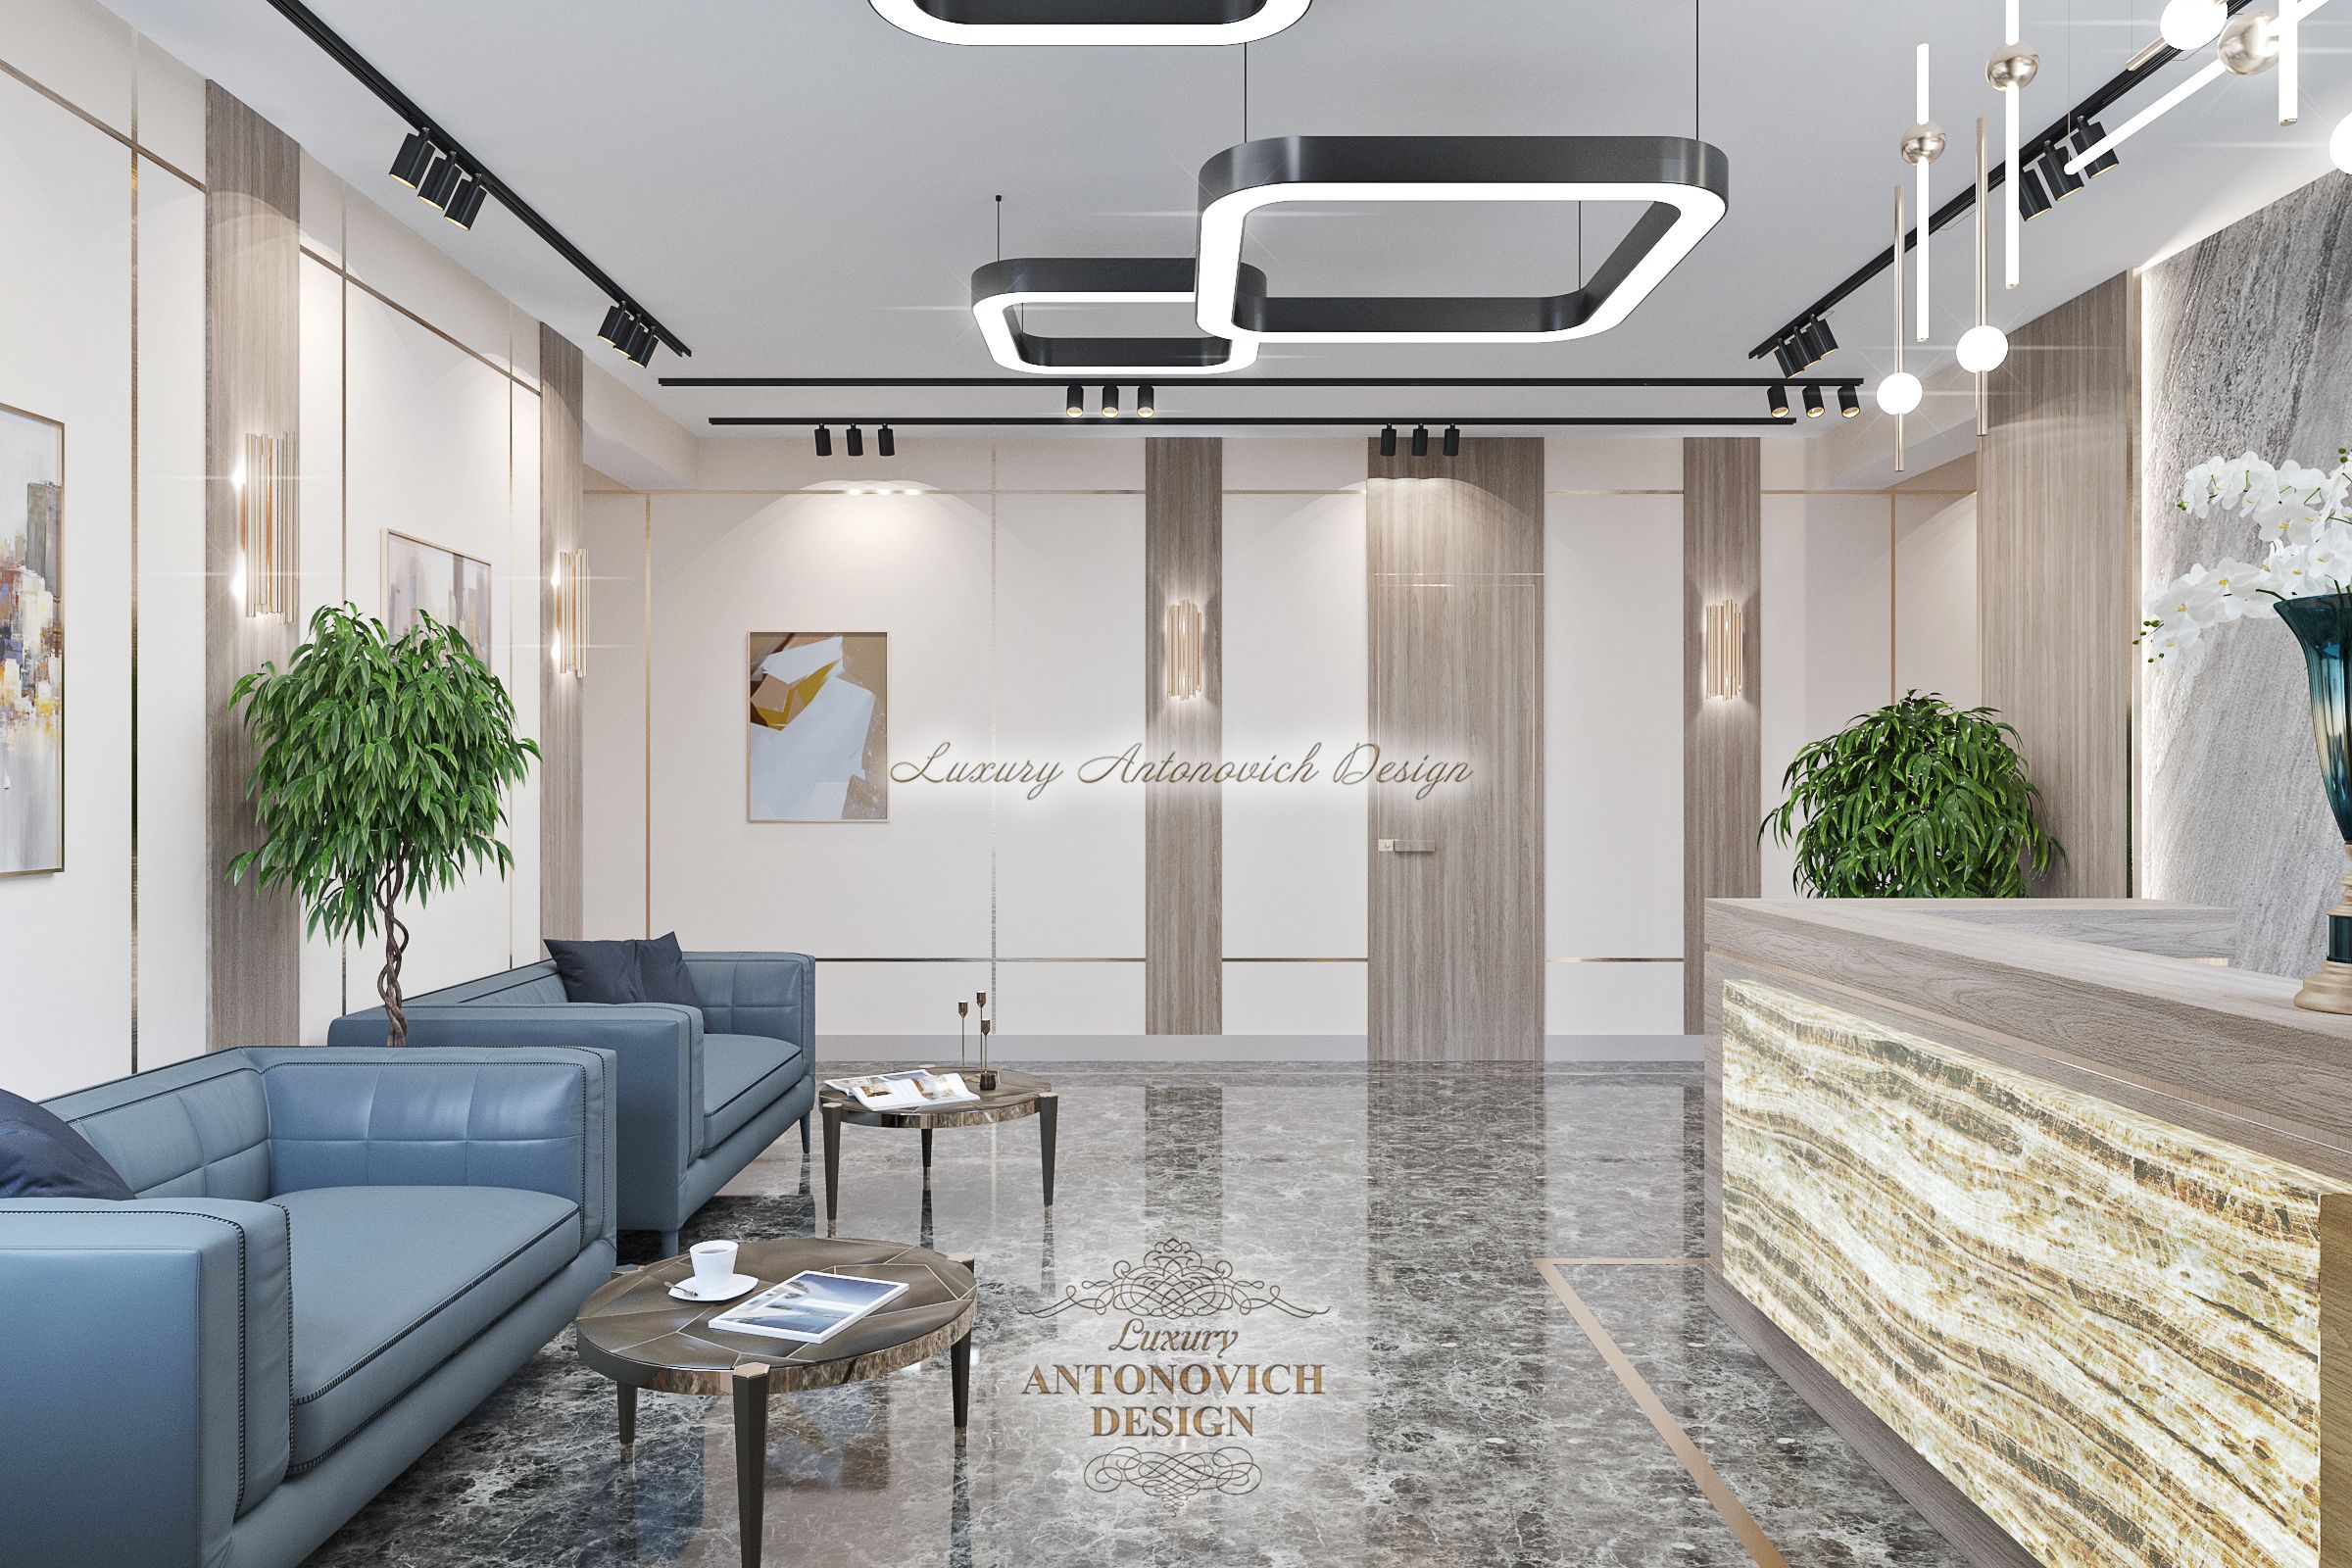 Холл офиса 4, Luxury Antonovich Design